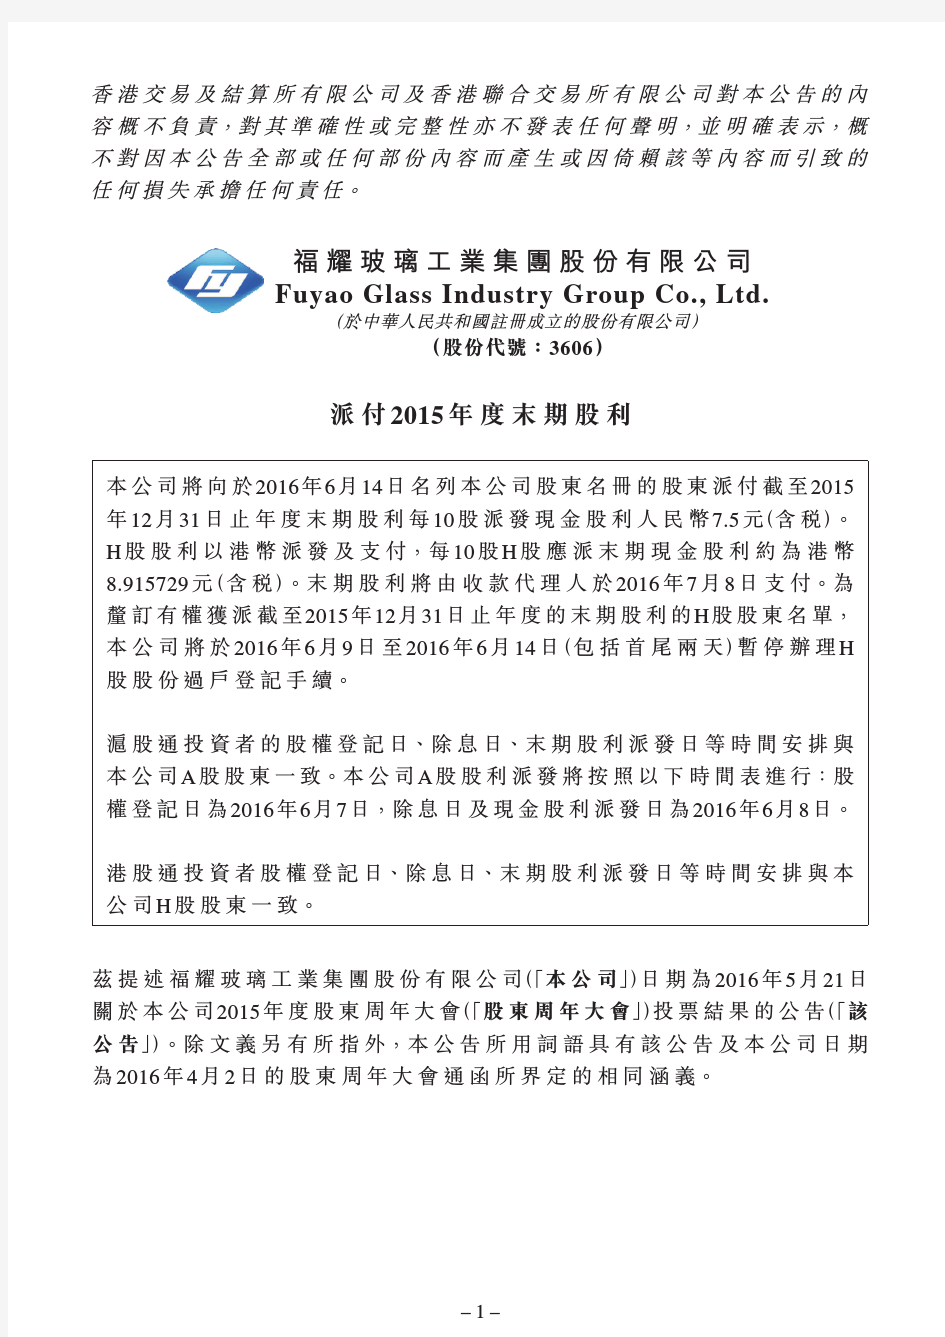 福耀玻璃工业集团股份有限公司FuyaoGlassIndustry-HKEXnews